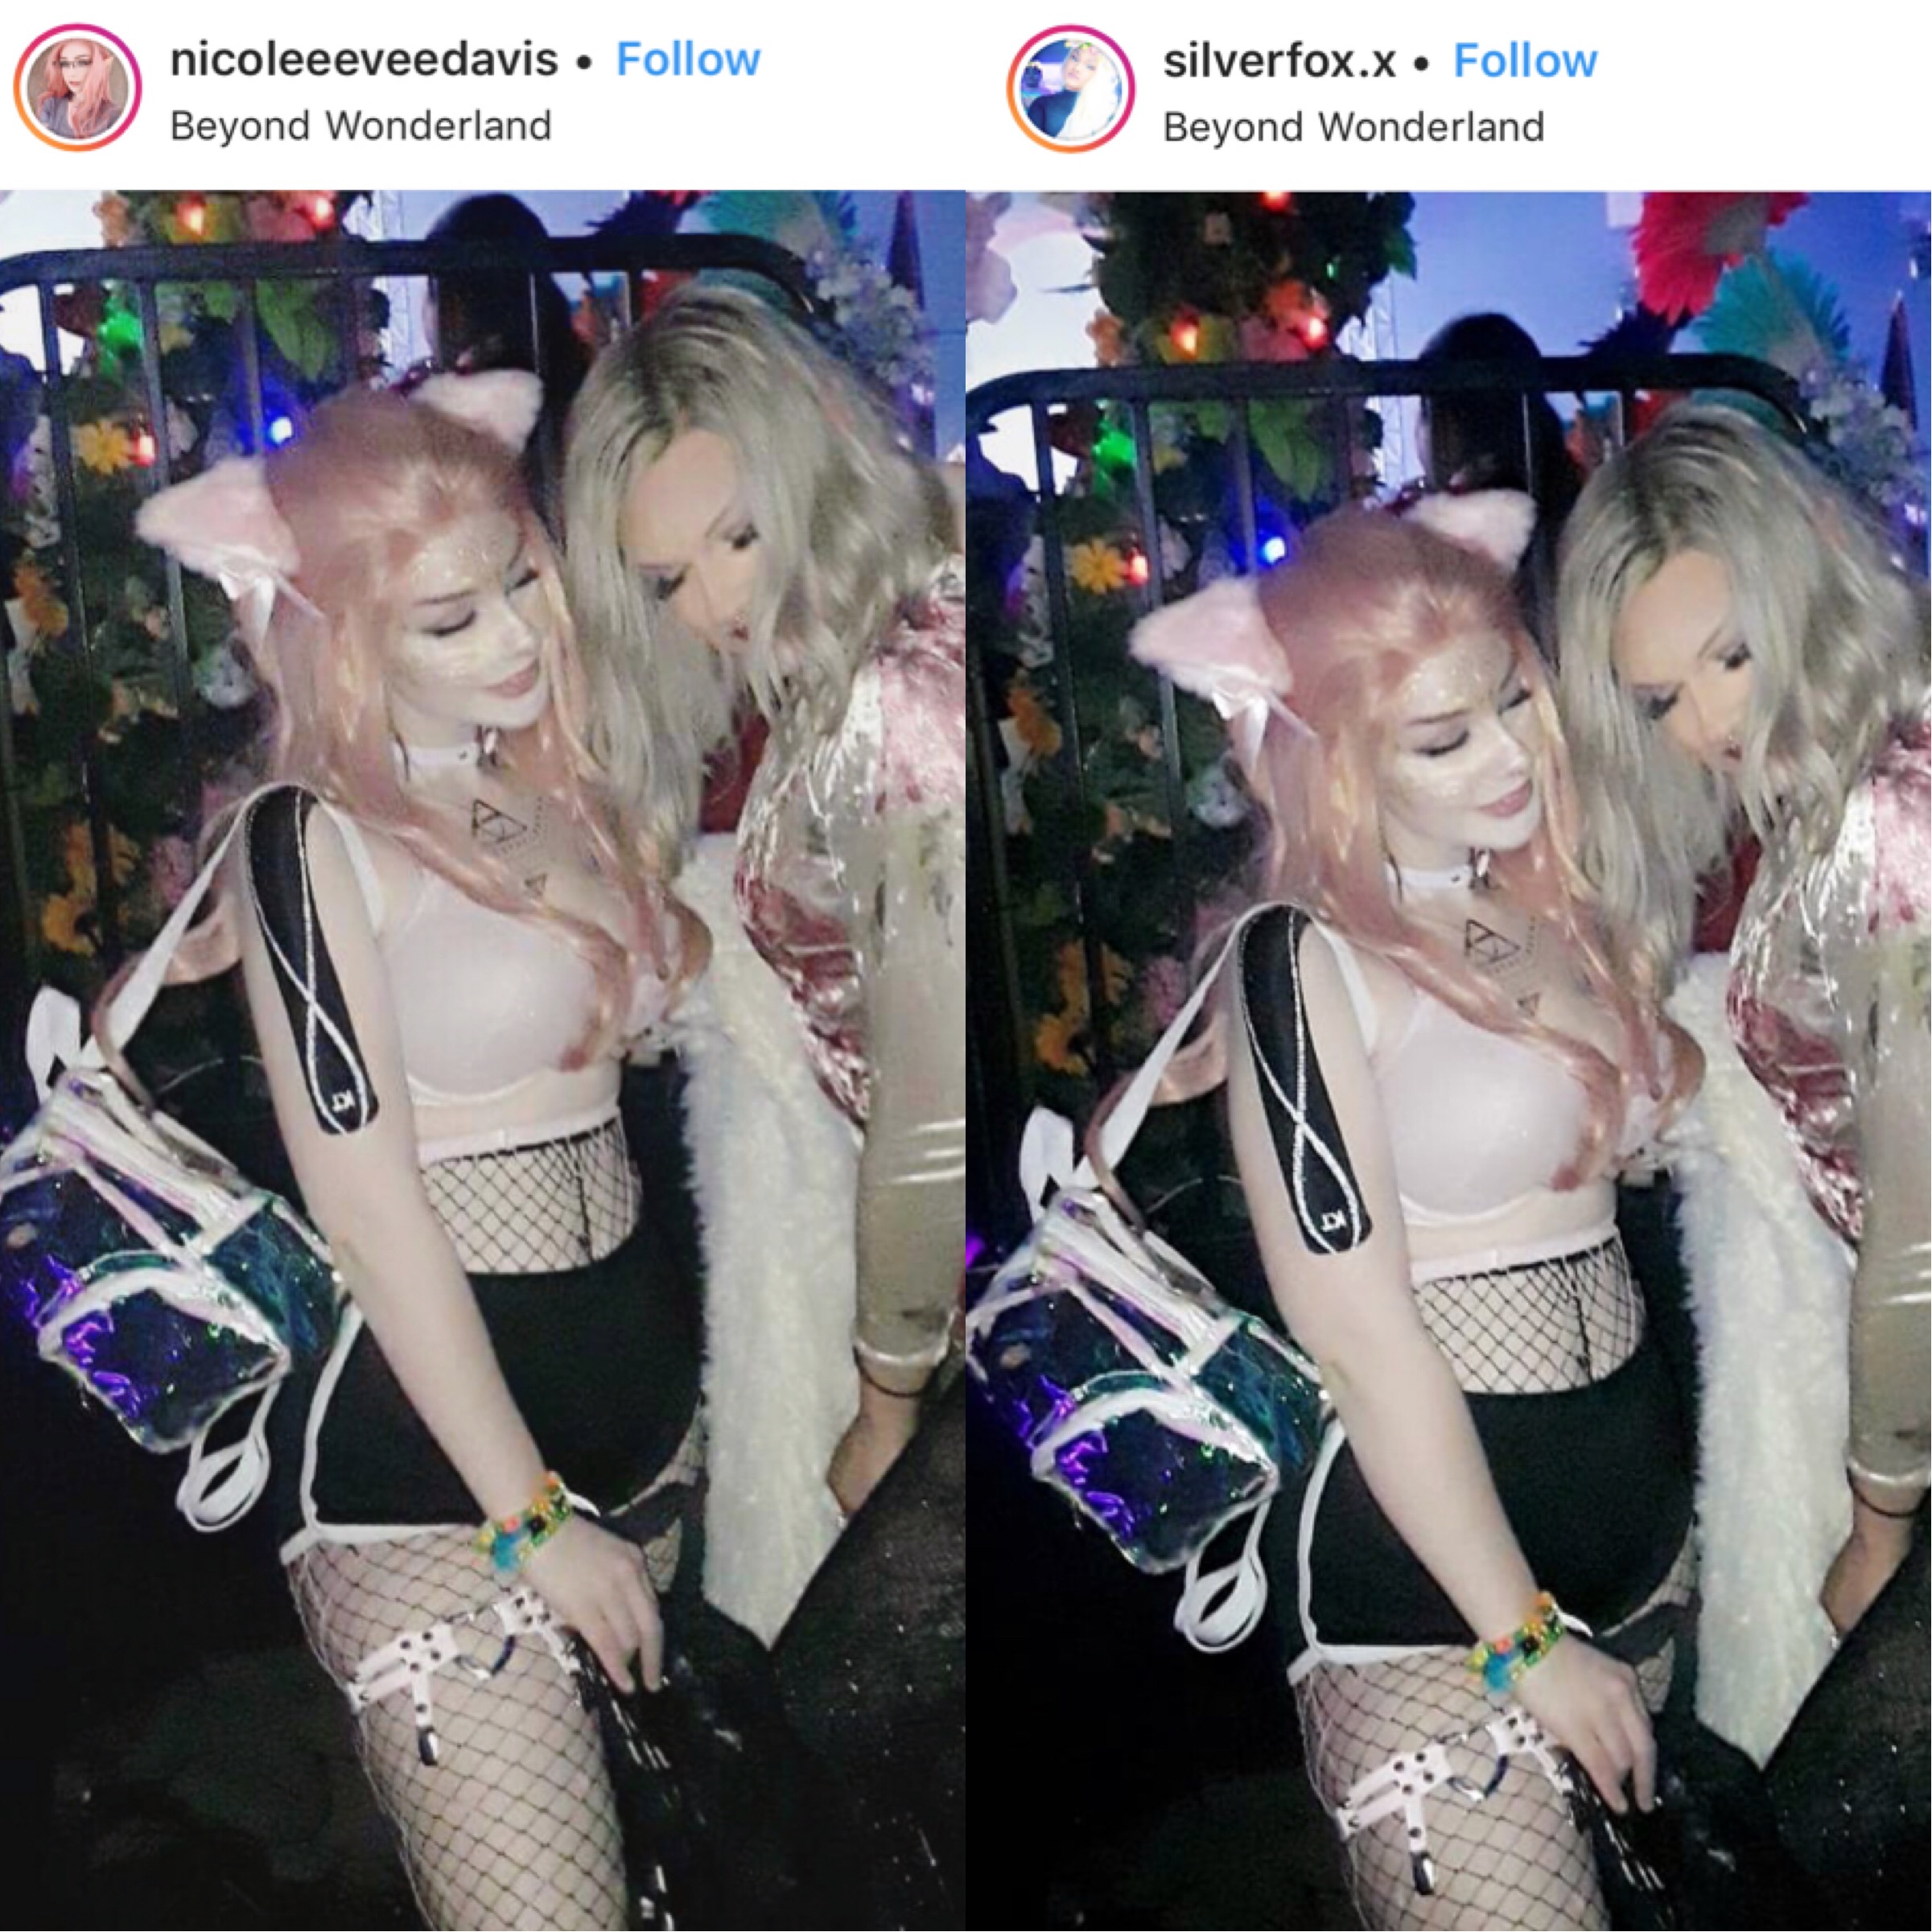 Here’s a photoshop comparison of NicoleEeveeDavis